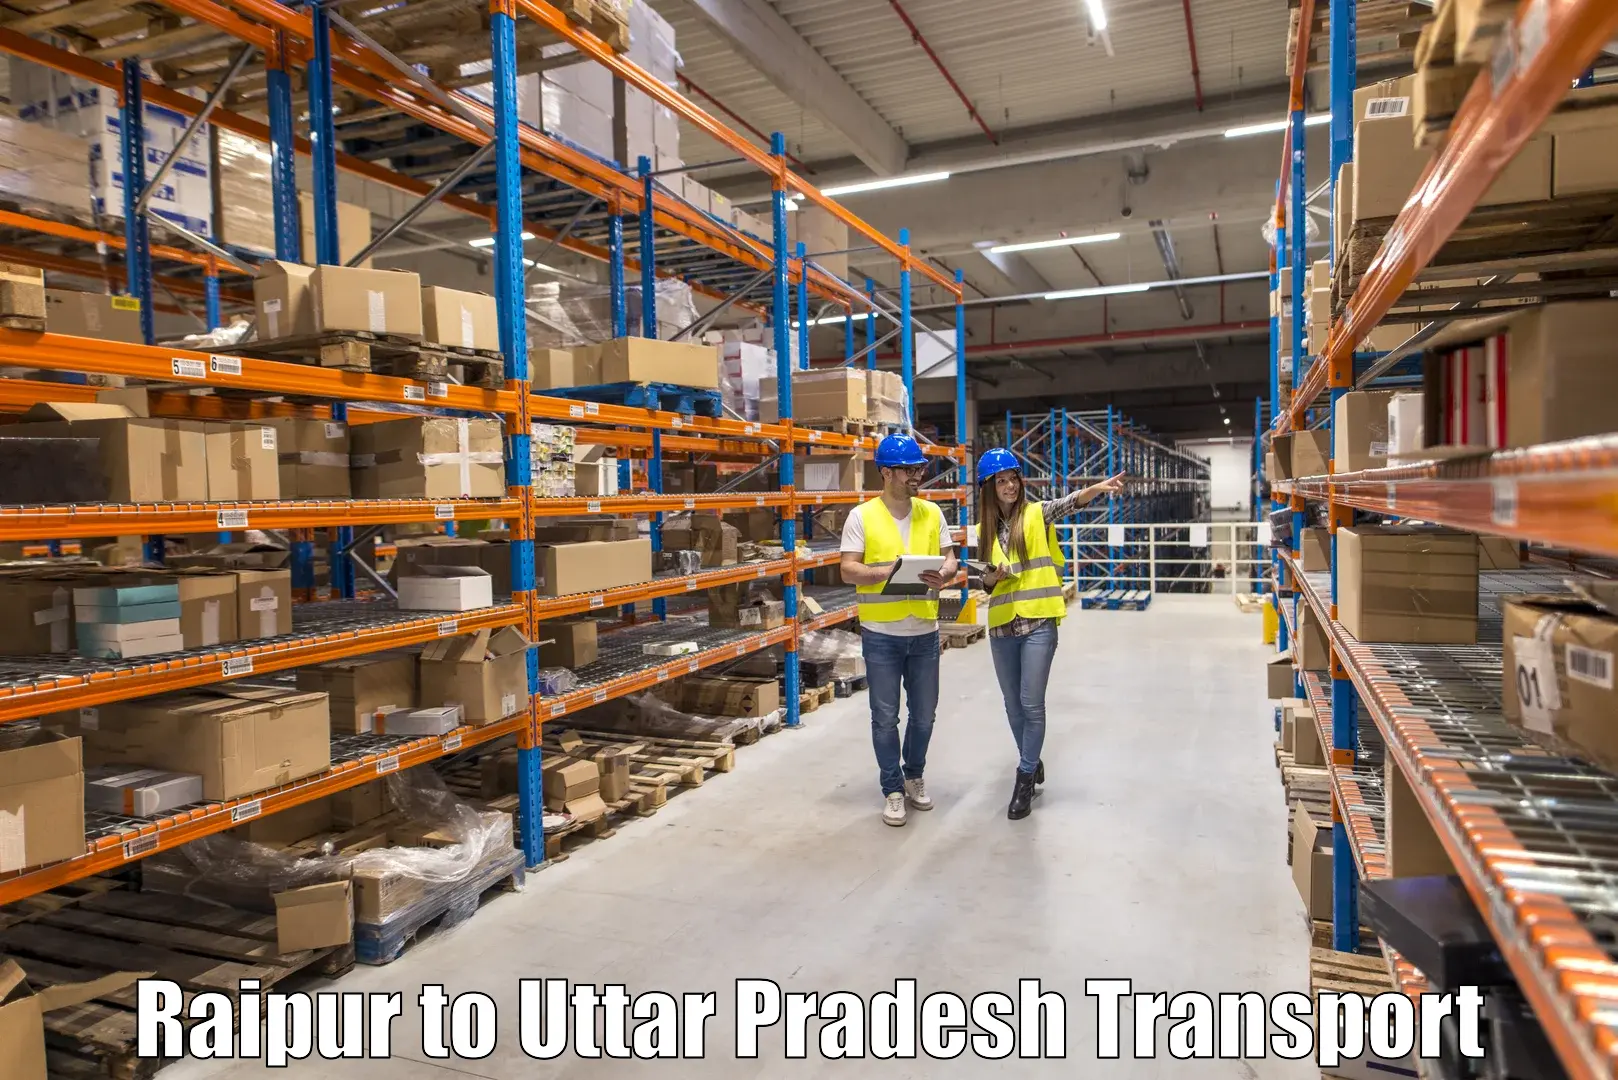 Furniture transport service Raipur to Sahatwar